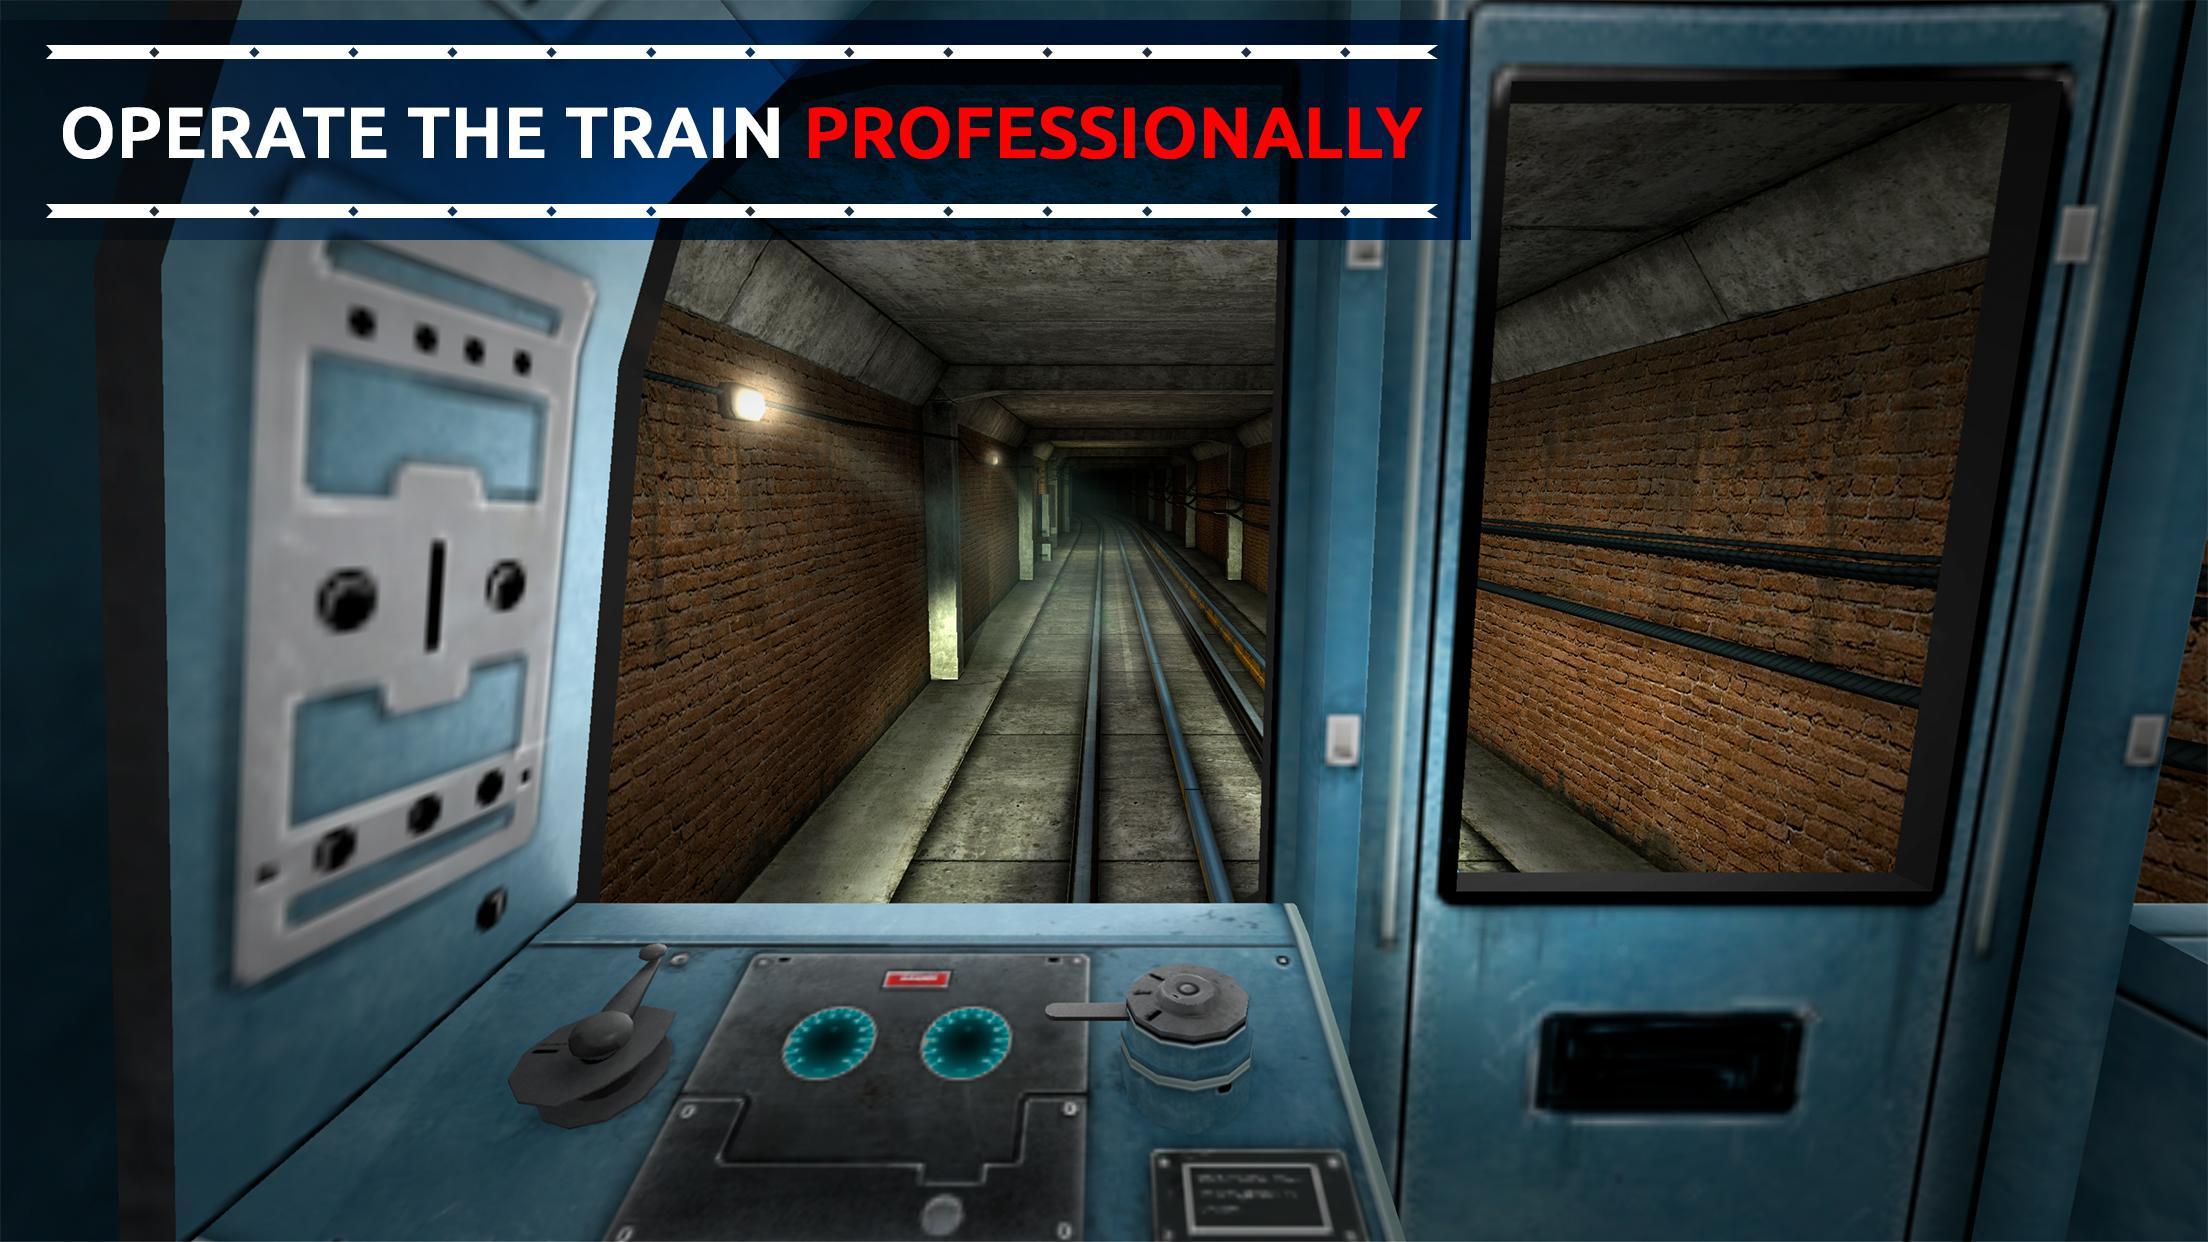 Поиграть в игру станцию метро. Метро симулятор 2. Симулятор лондонского метро 2 д. Симулятор метро поезда 3d Pro. Метро симулятор 3д - поезда.